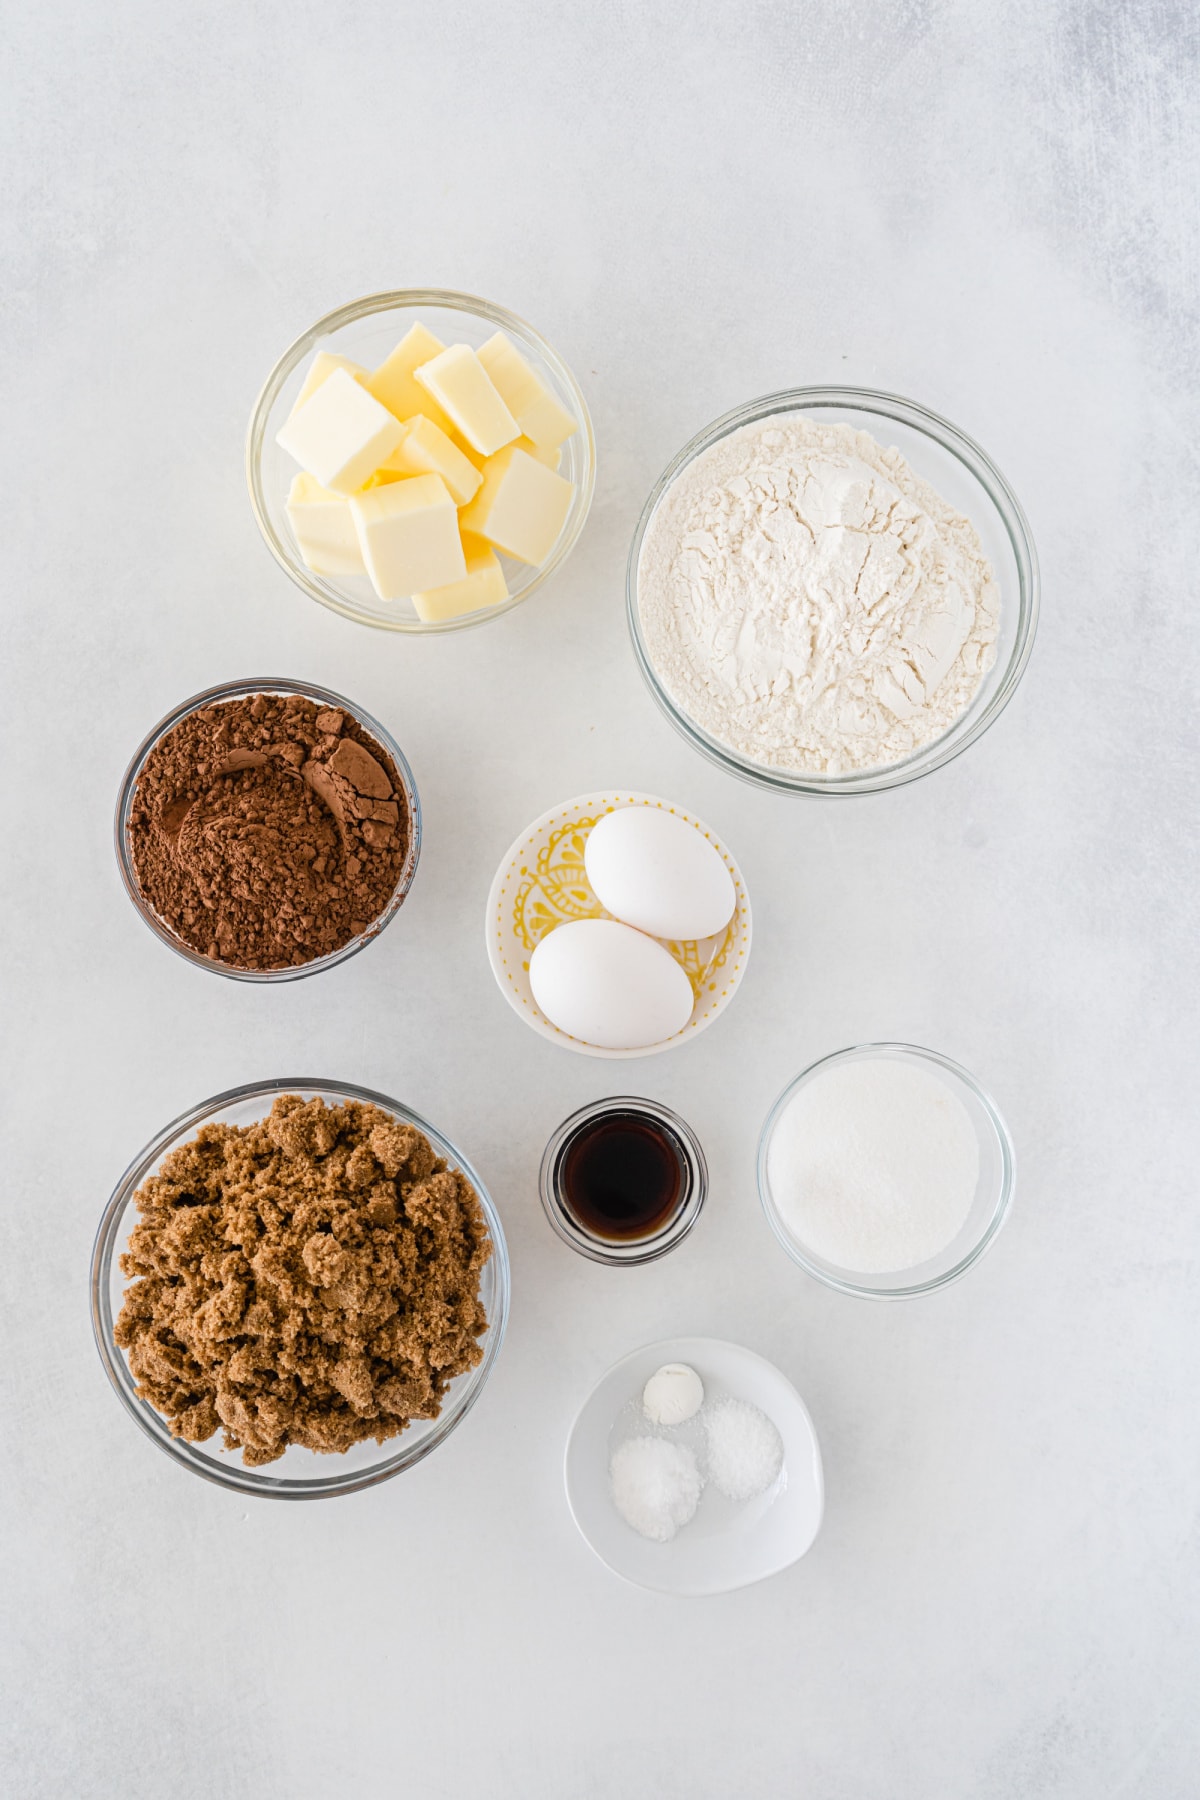 ingredients displayed for making chocolate sugar cookies